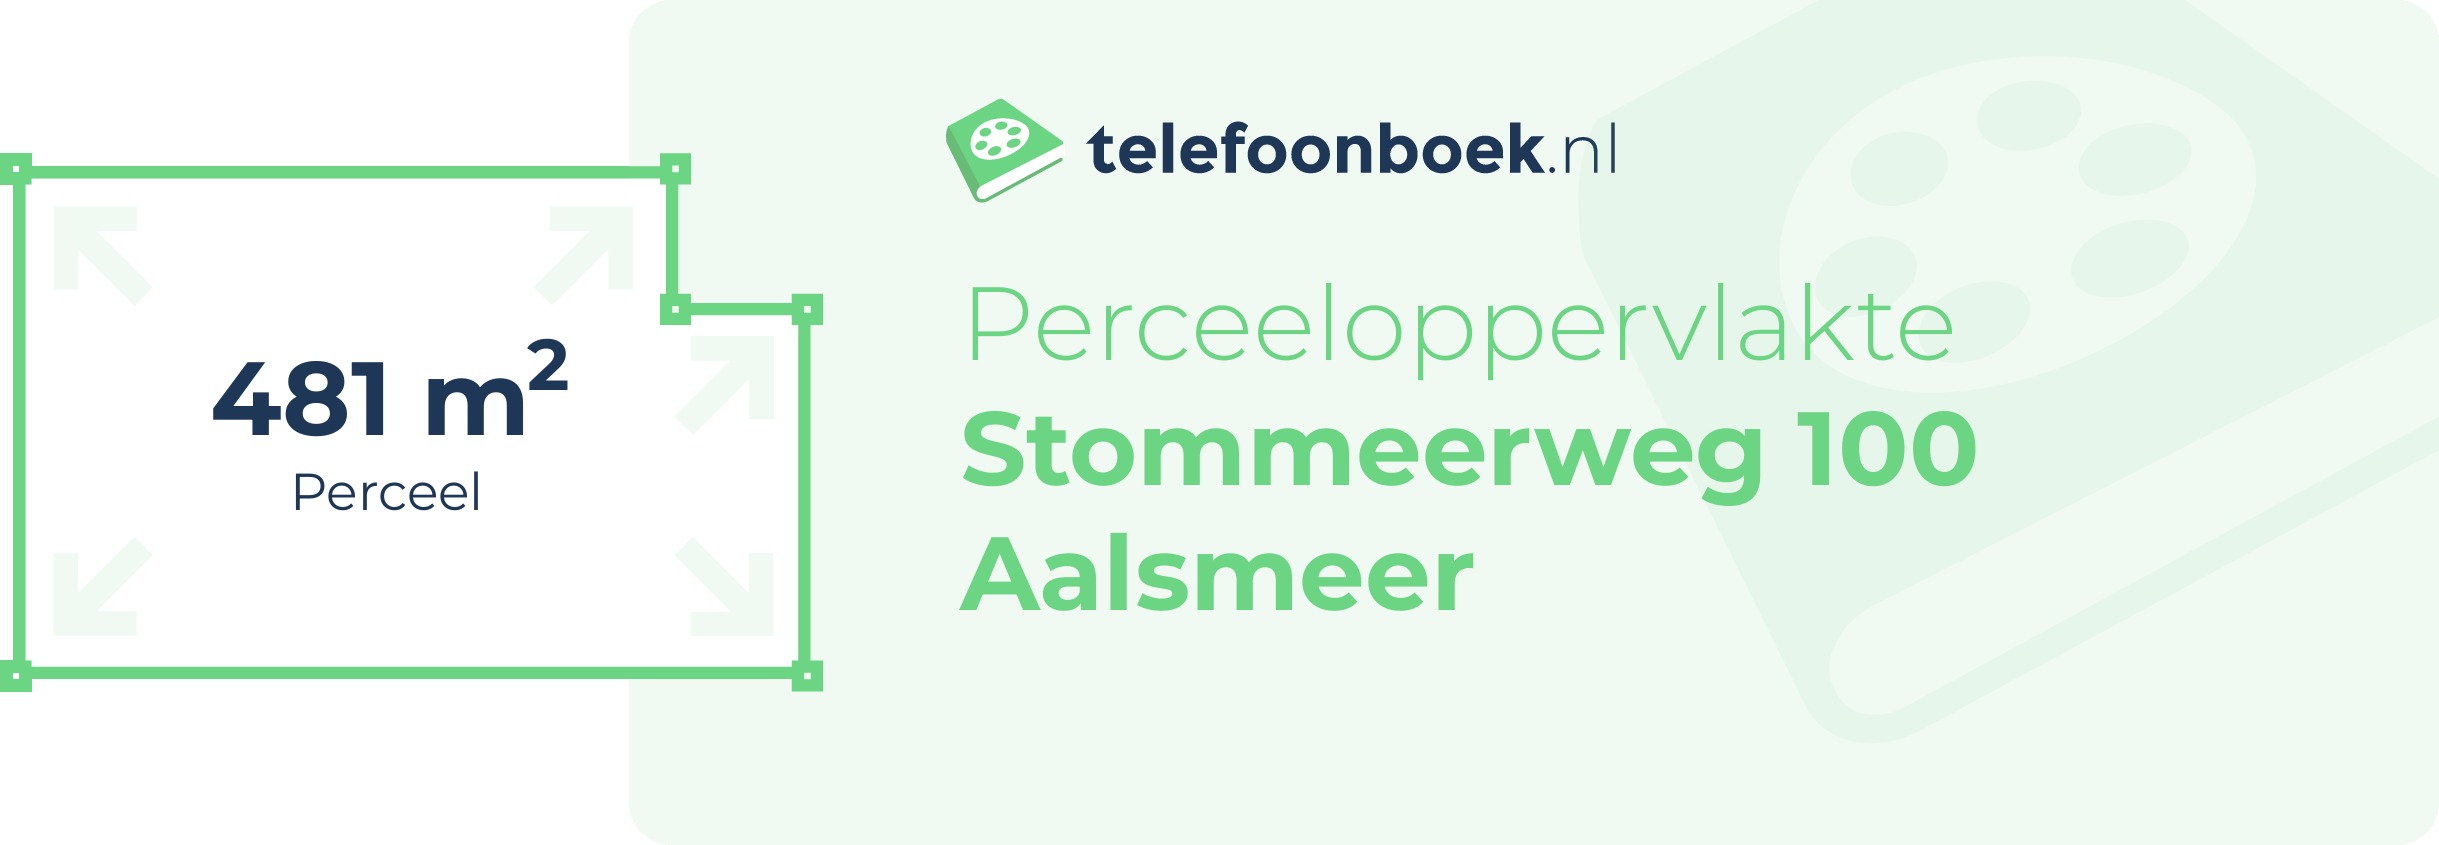 Perceeloppervlakte Stommeerweg 100 Aalsmeer